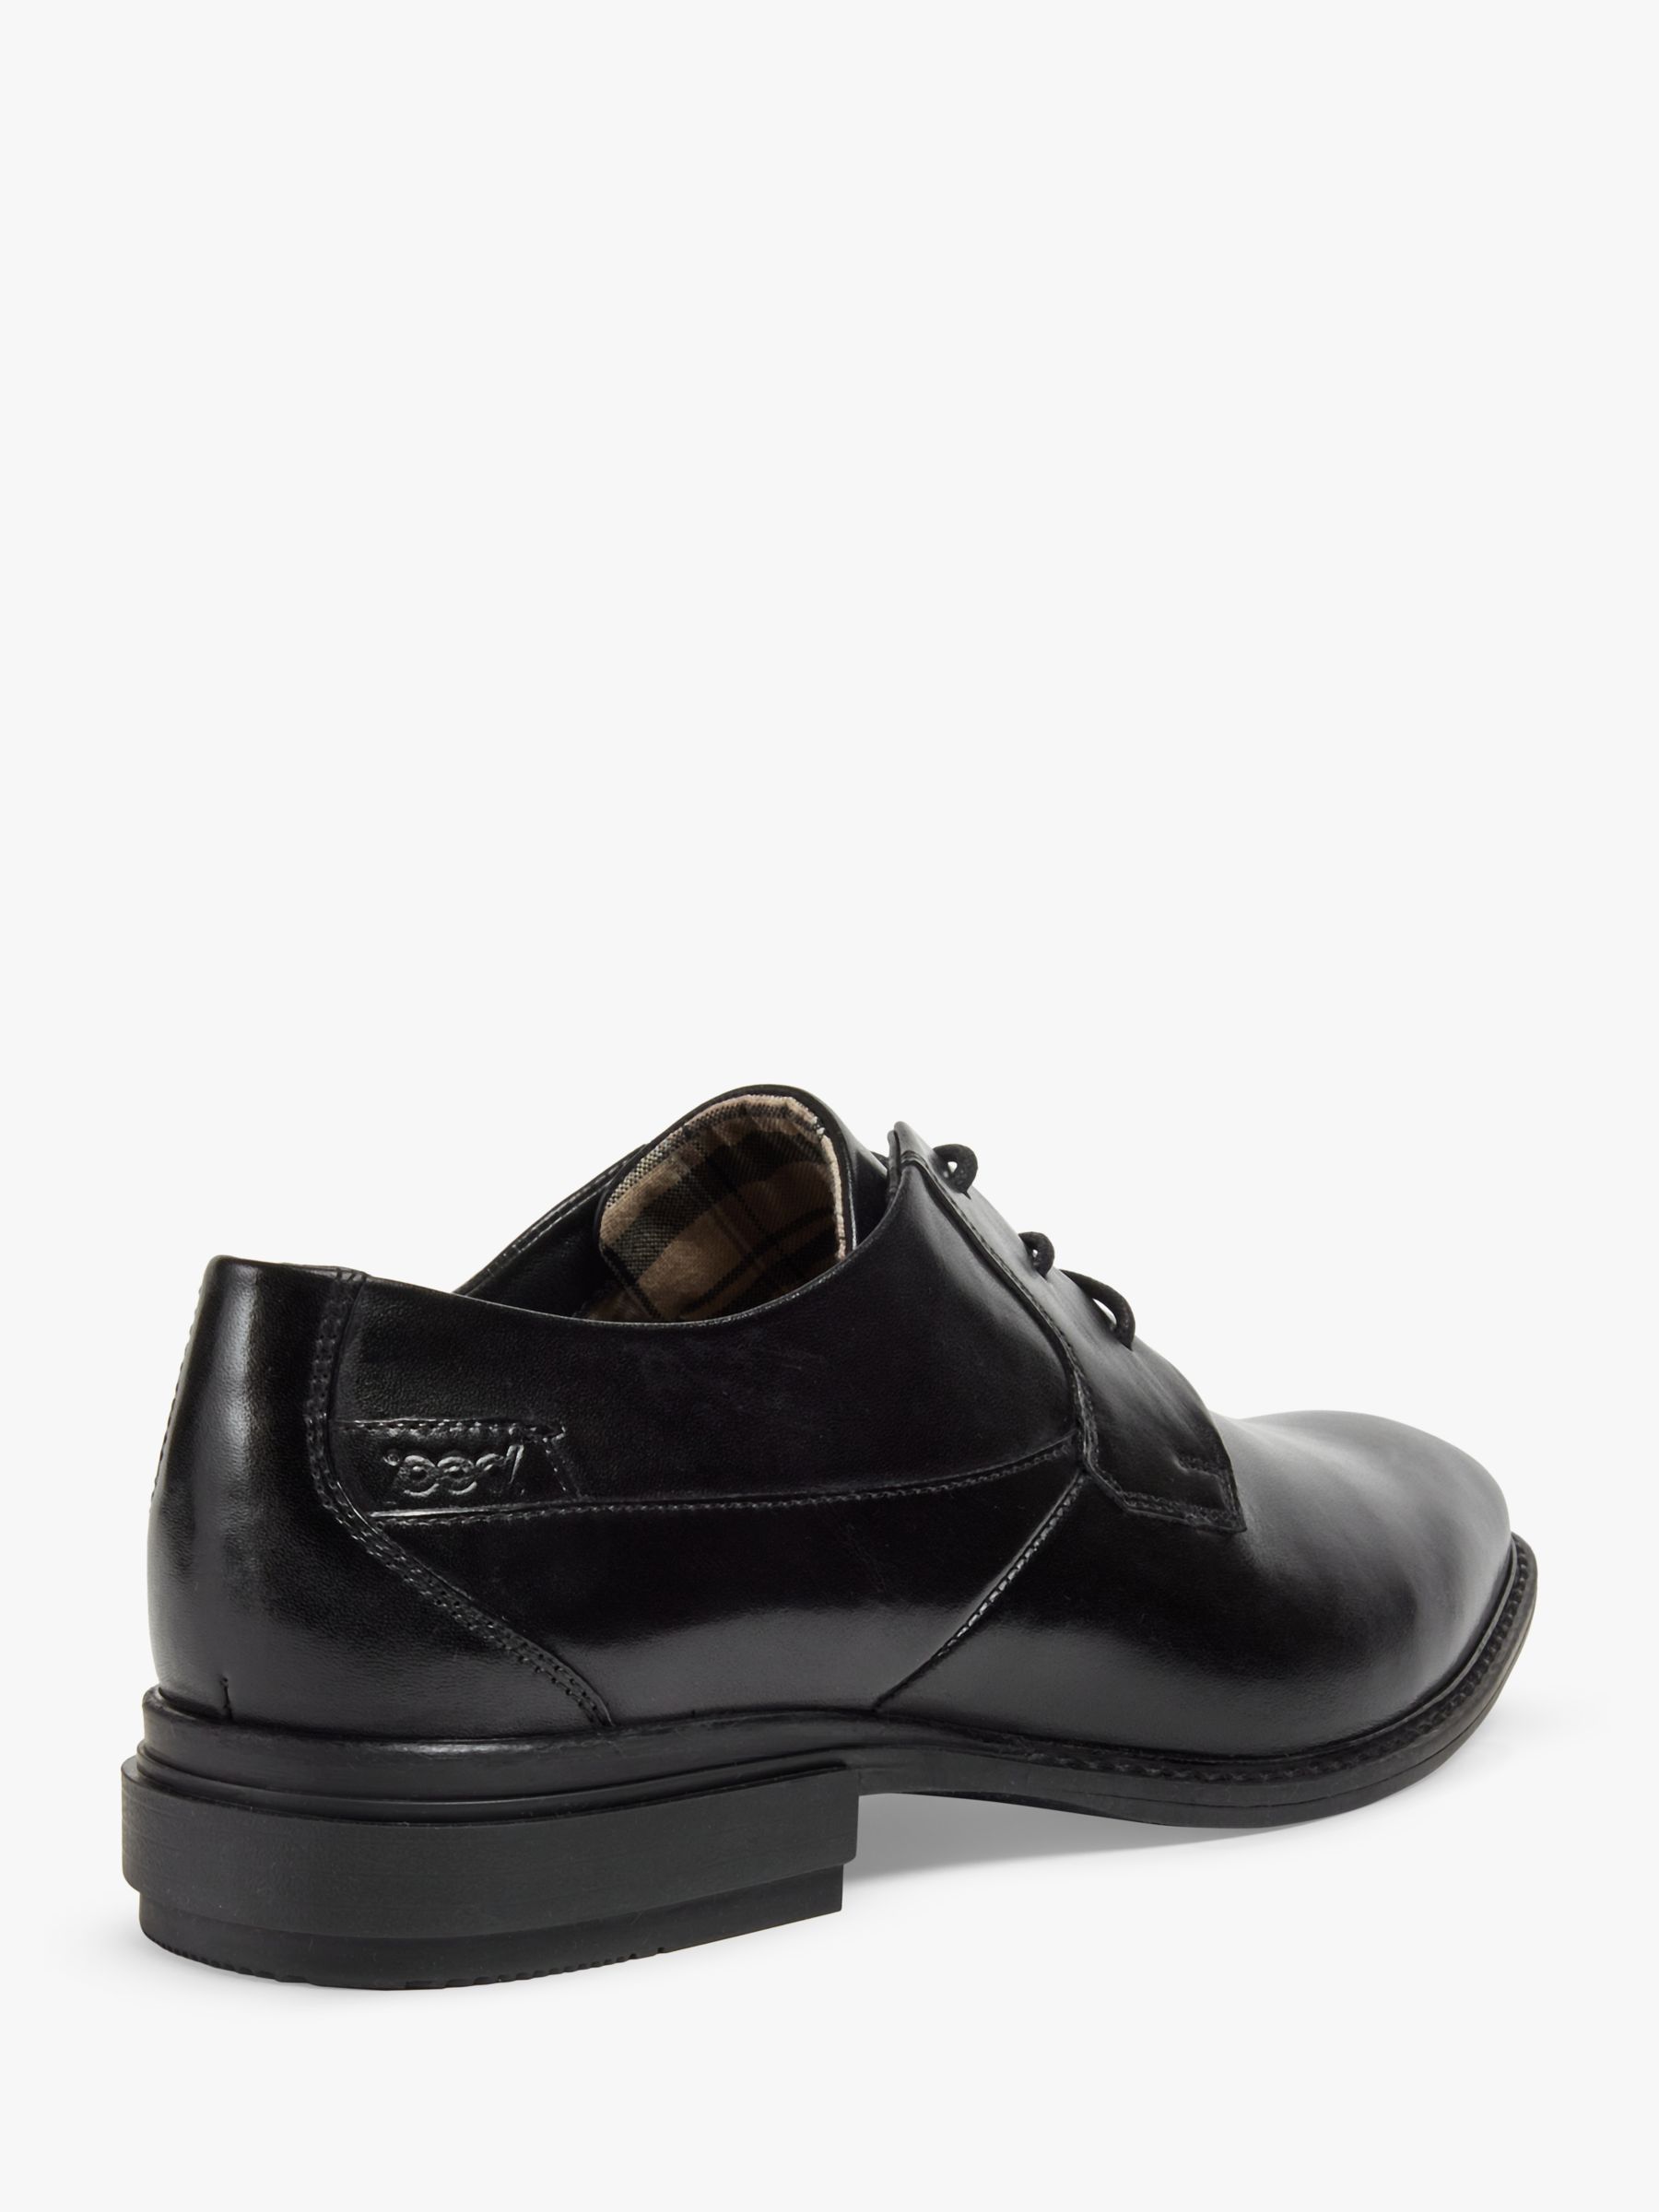 Pod Smyth Lace Up Shoes, Black, 6